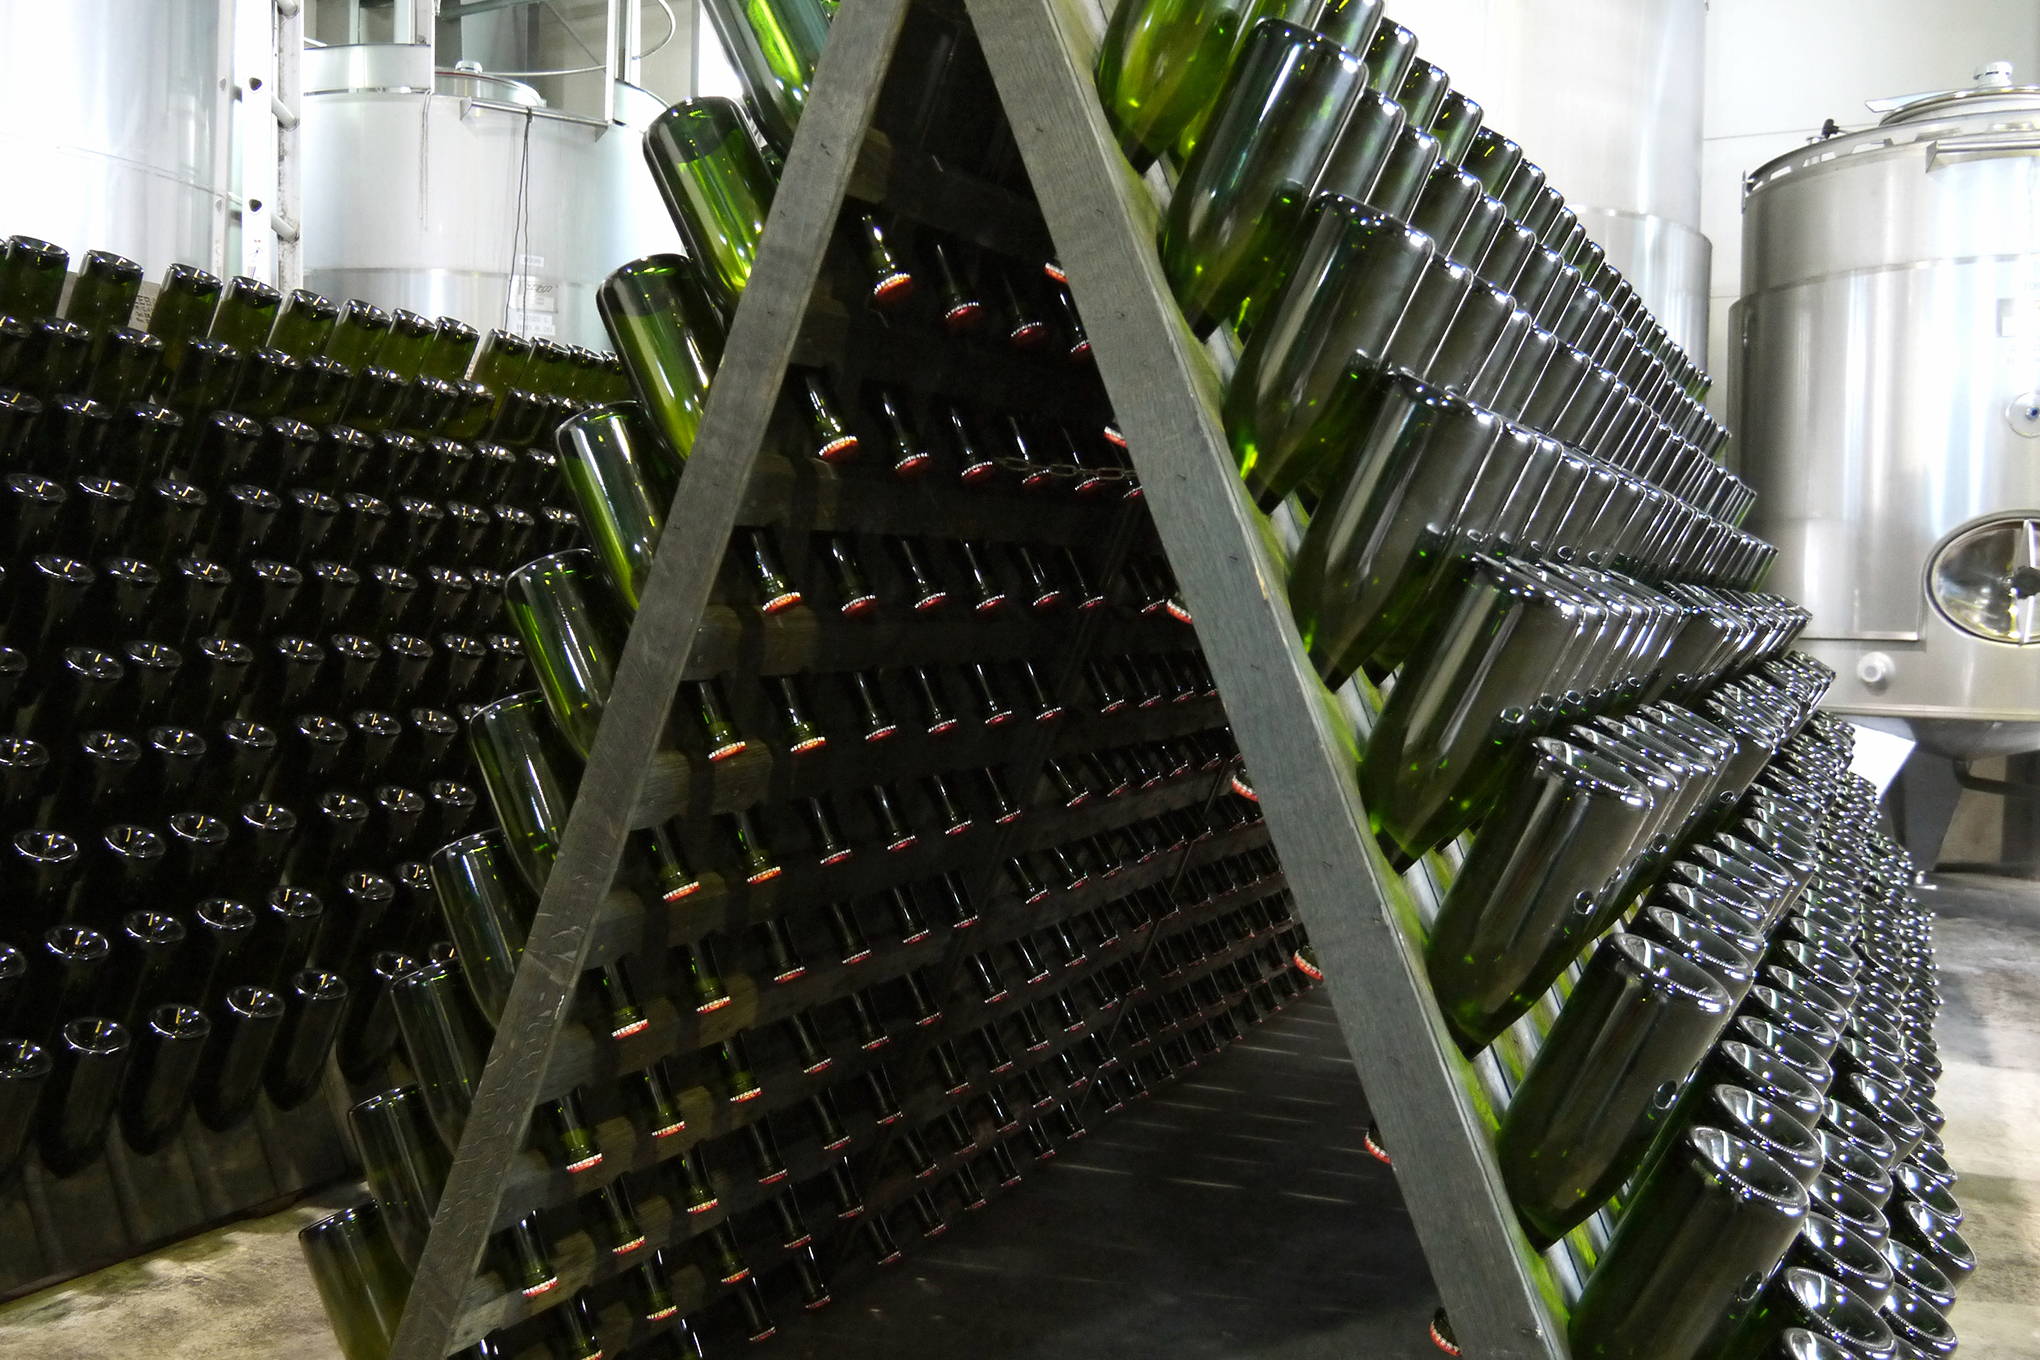 そして、日本でしか造れないオリジナリティーあふれるワインが、世界に認められるようになって。